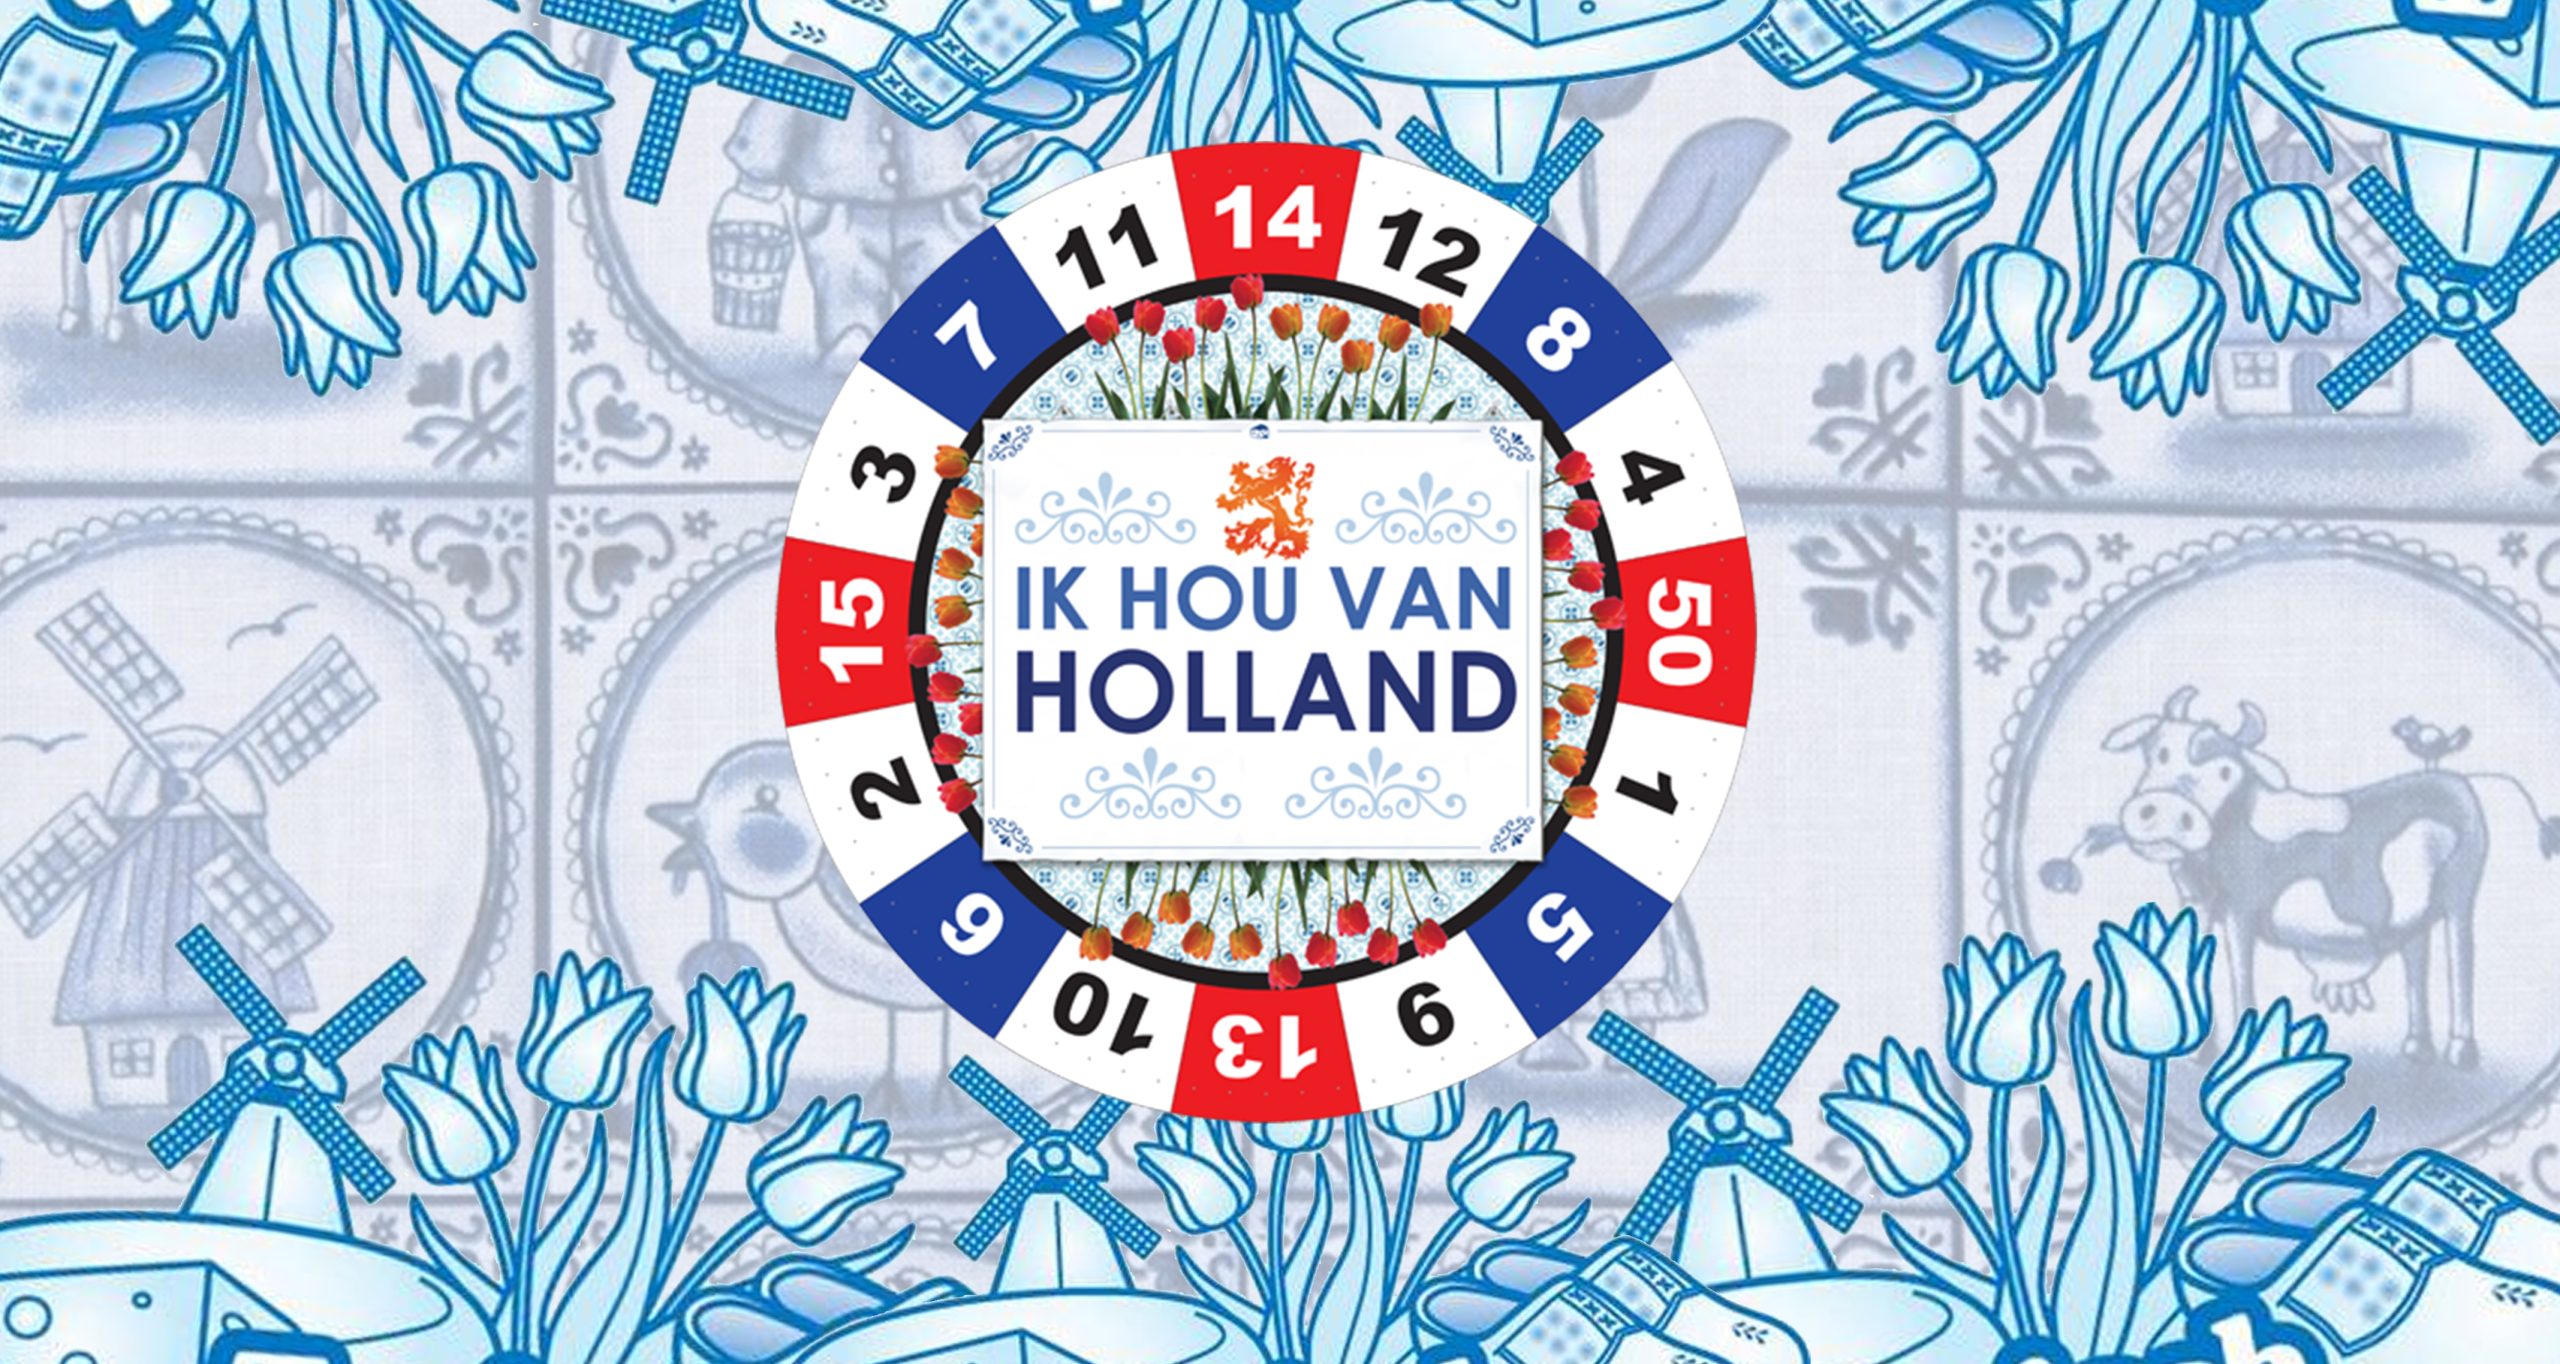 Delft: Ik Hou Van Holland in de stad